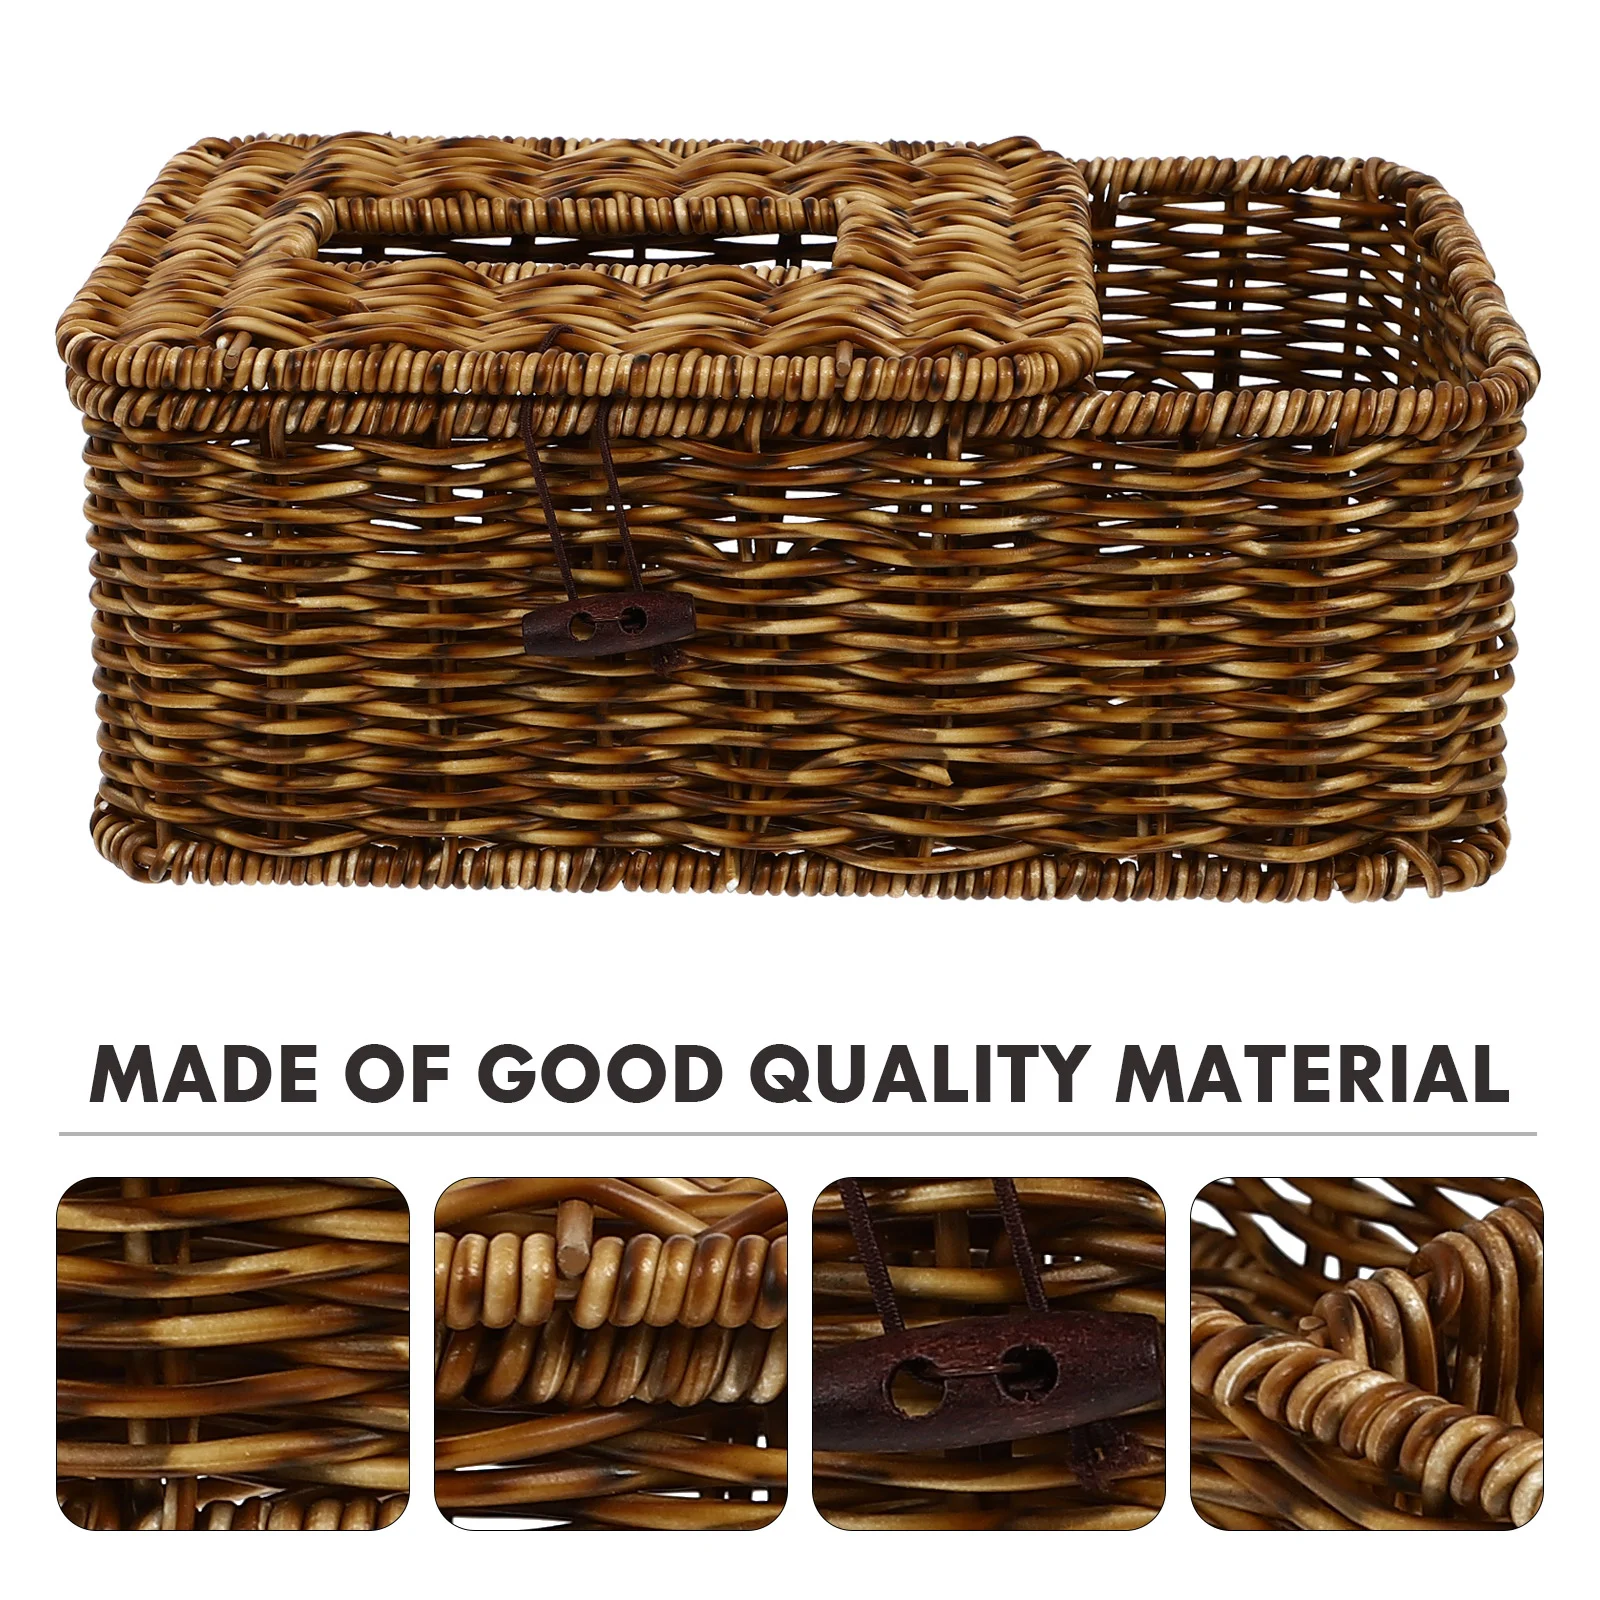 

Box Tissue Holder Napkin Cover Rattan Wicker Woven Paper Storage Basket Home Dispenser Square Facial Case Seagrass Decorative